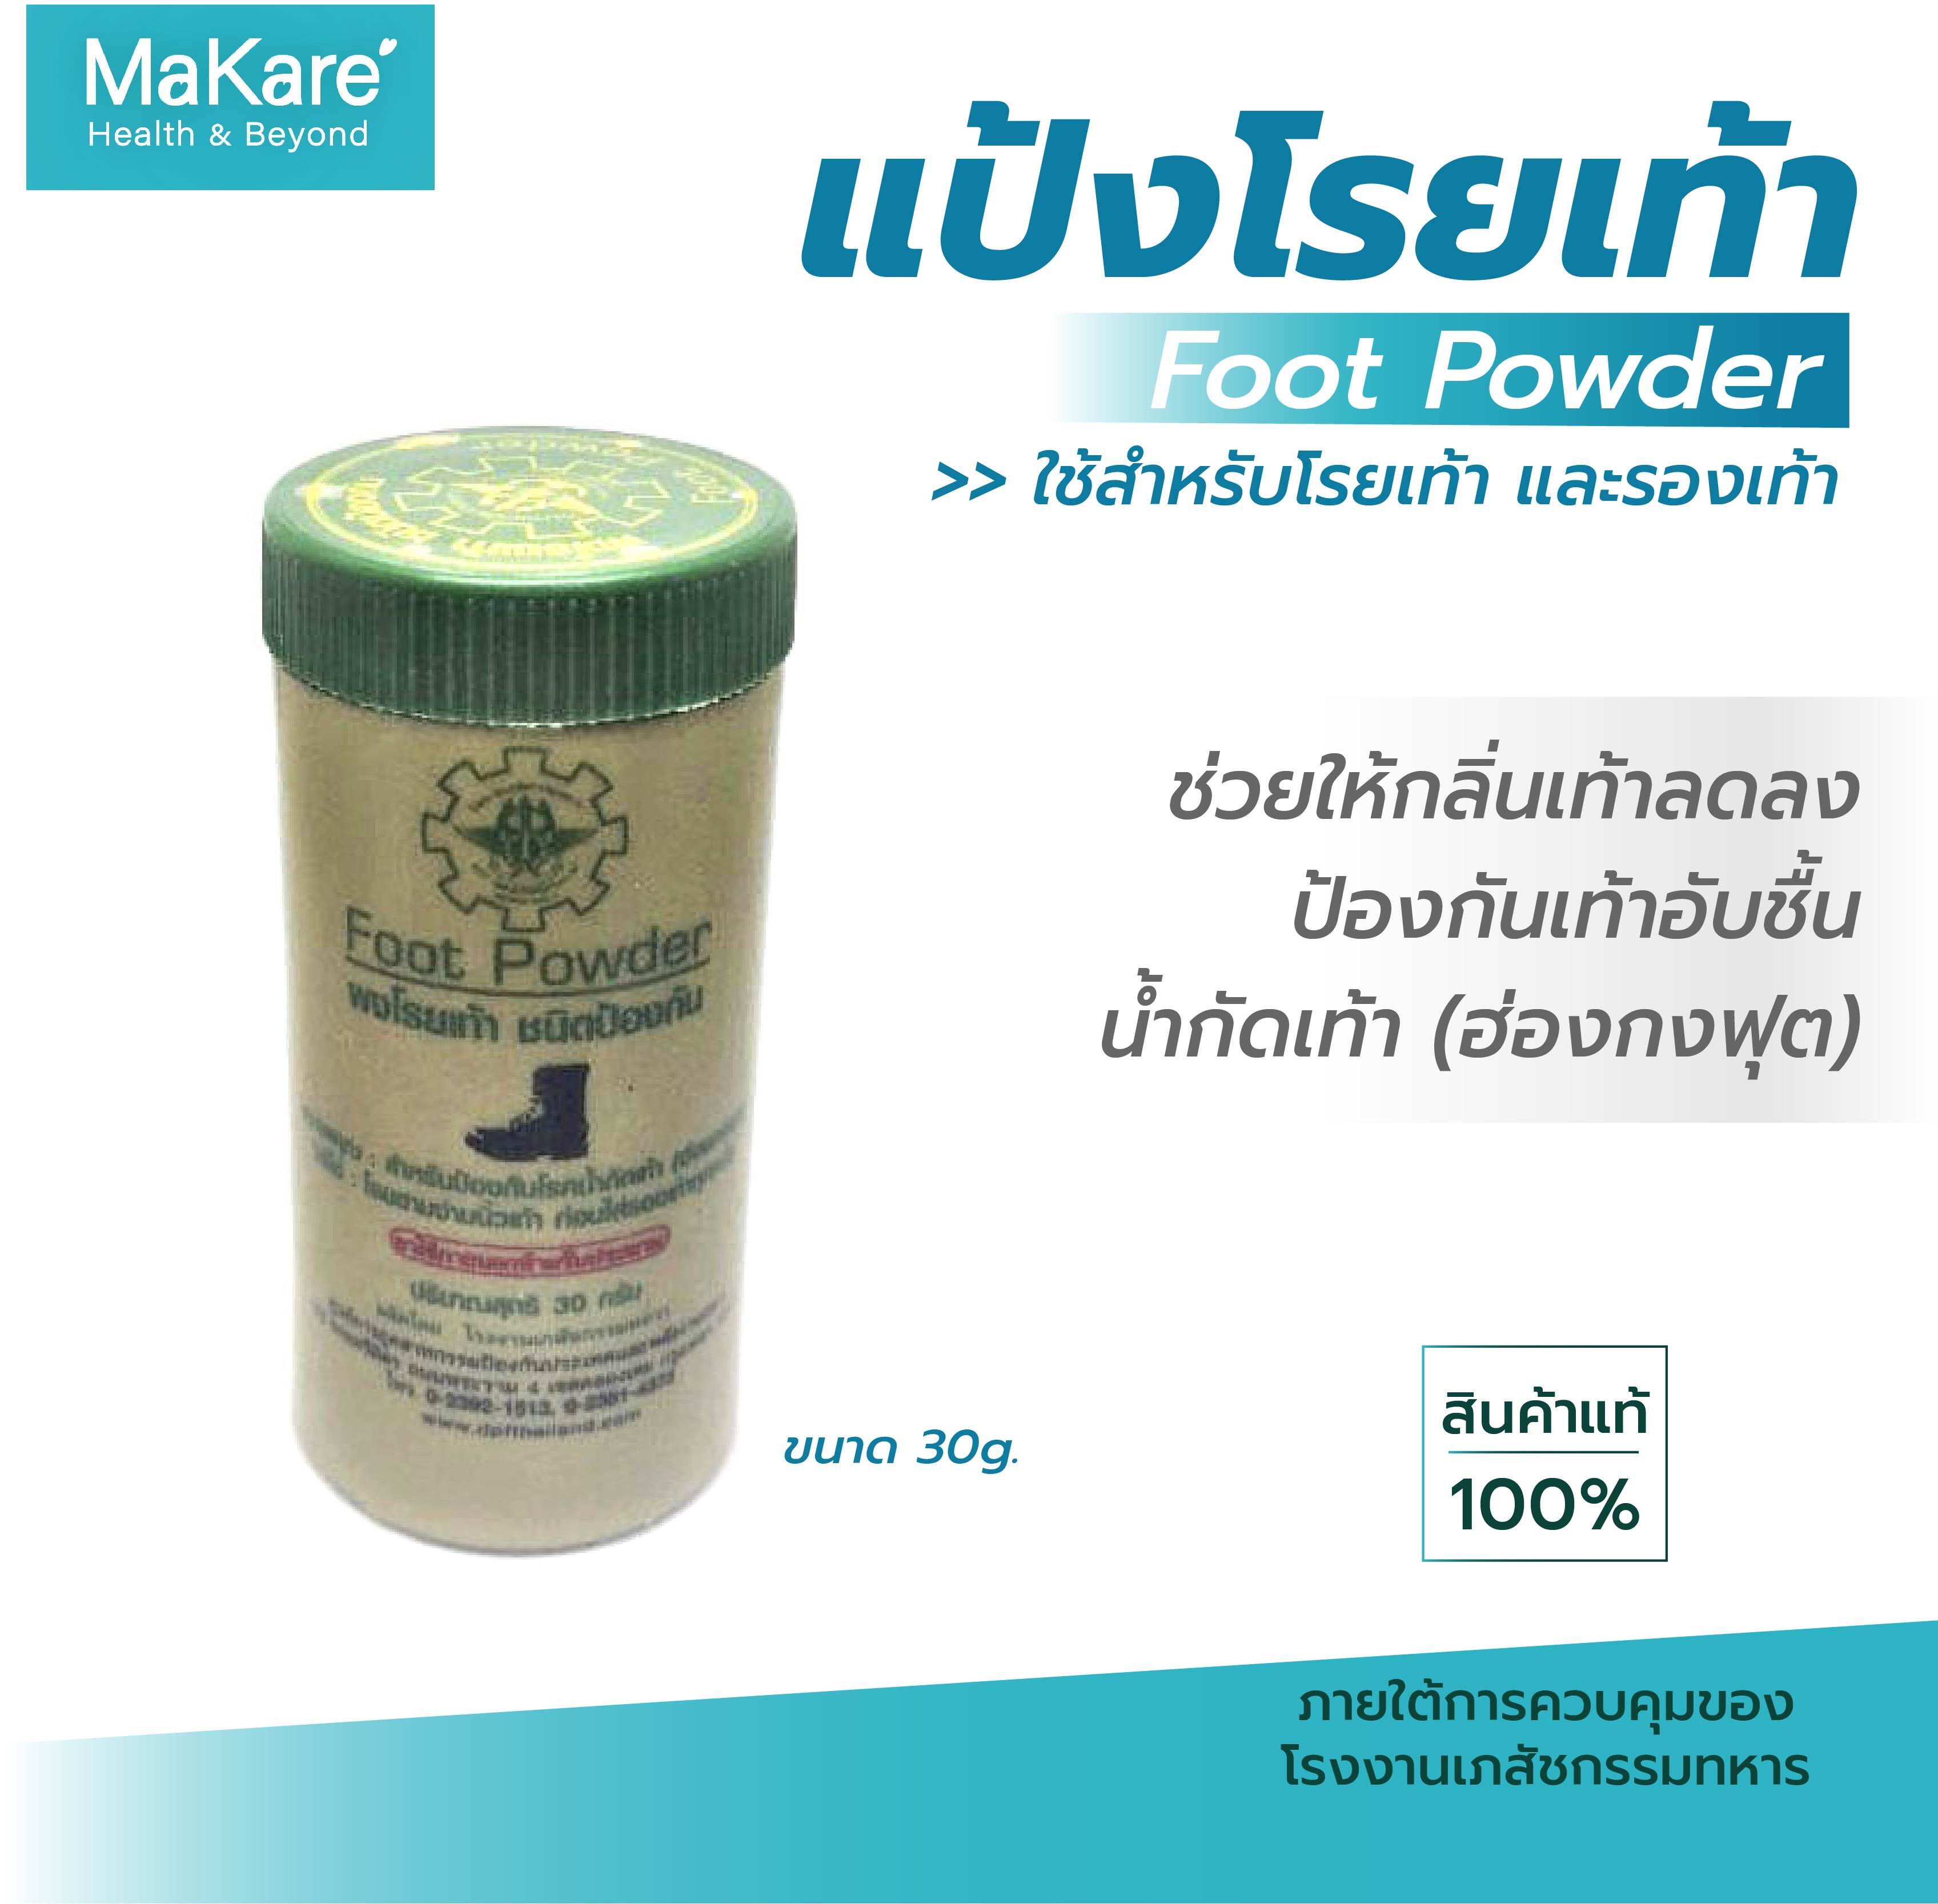 แป้งโรยเท้า Foot Powder บรรเทาอาการคัน ลดกลิ่นอับชื้น ป้องกันเท้าอับชื้น น้ำกัดเท้า (ฮ่องกงฟุต) ผงโรยเท้าทหาร ขนาด 30 กรัม จำนวน 1 กระปุก